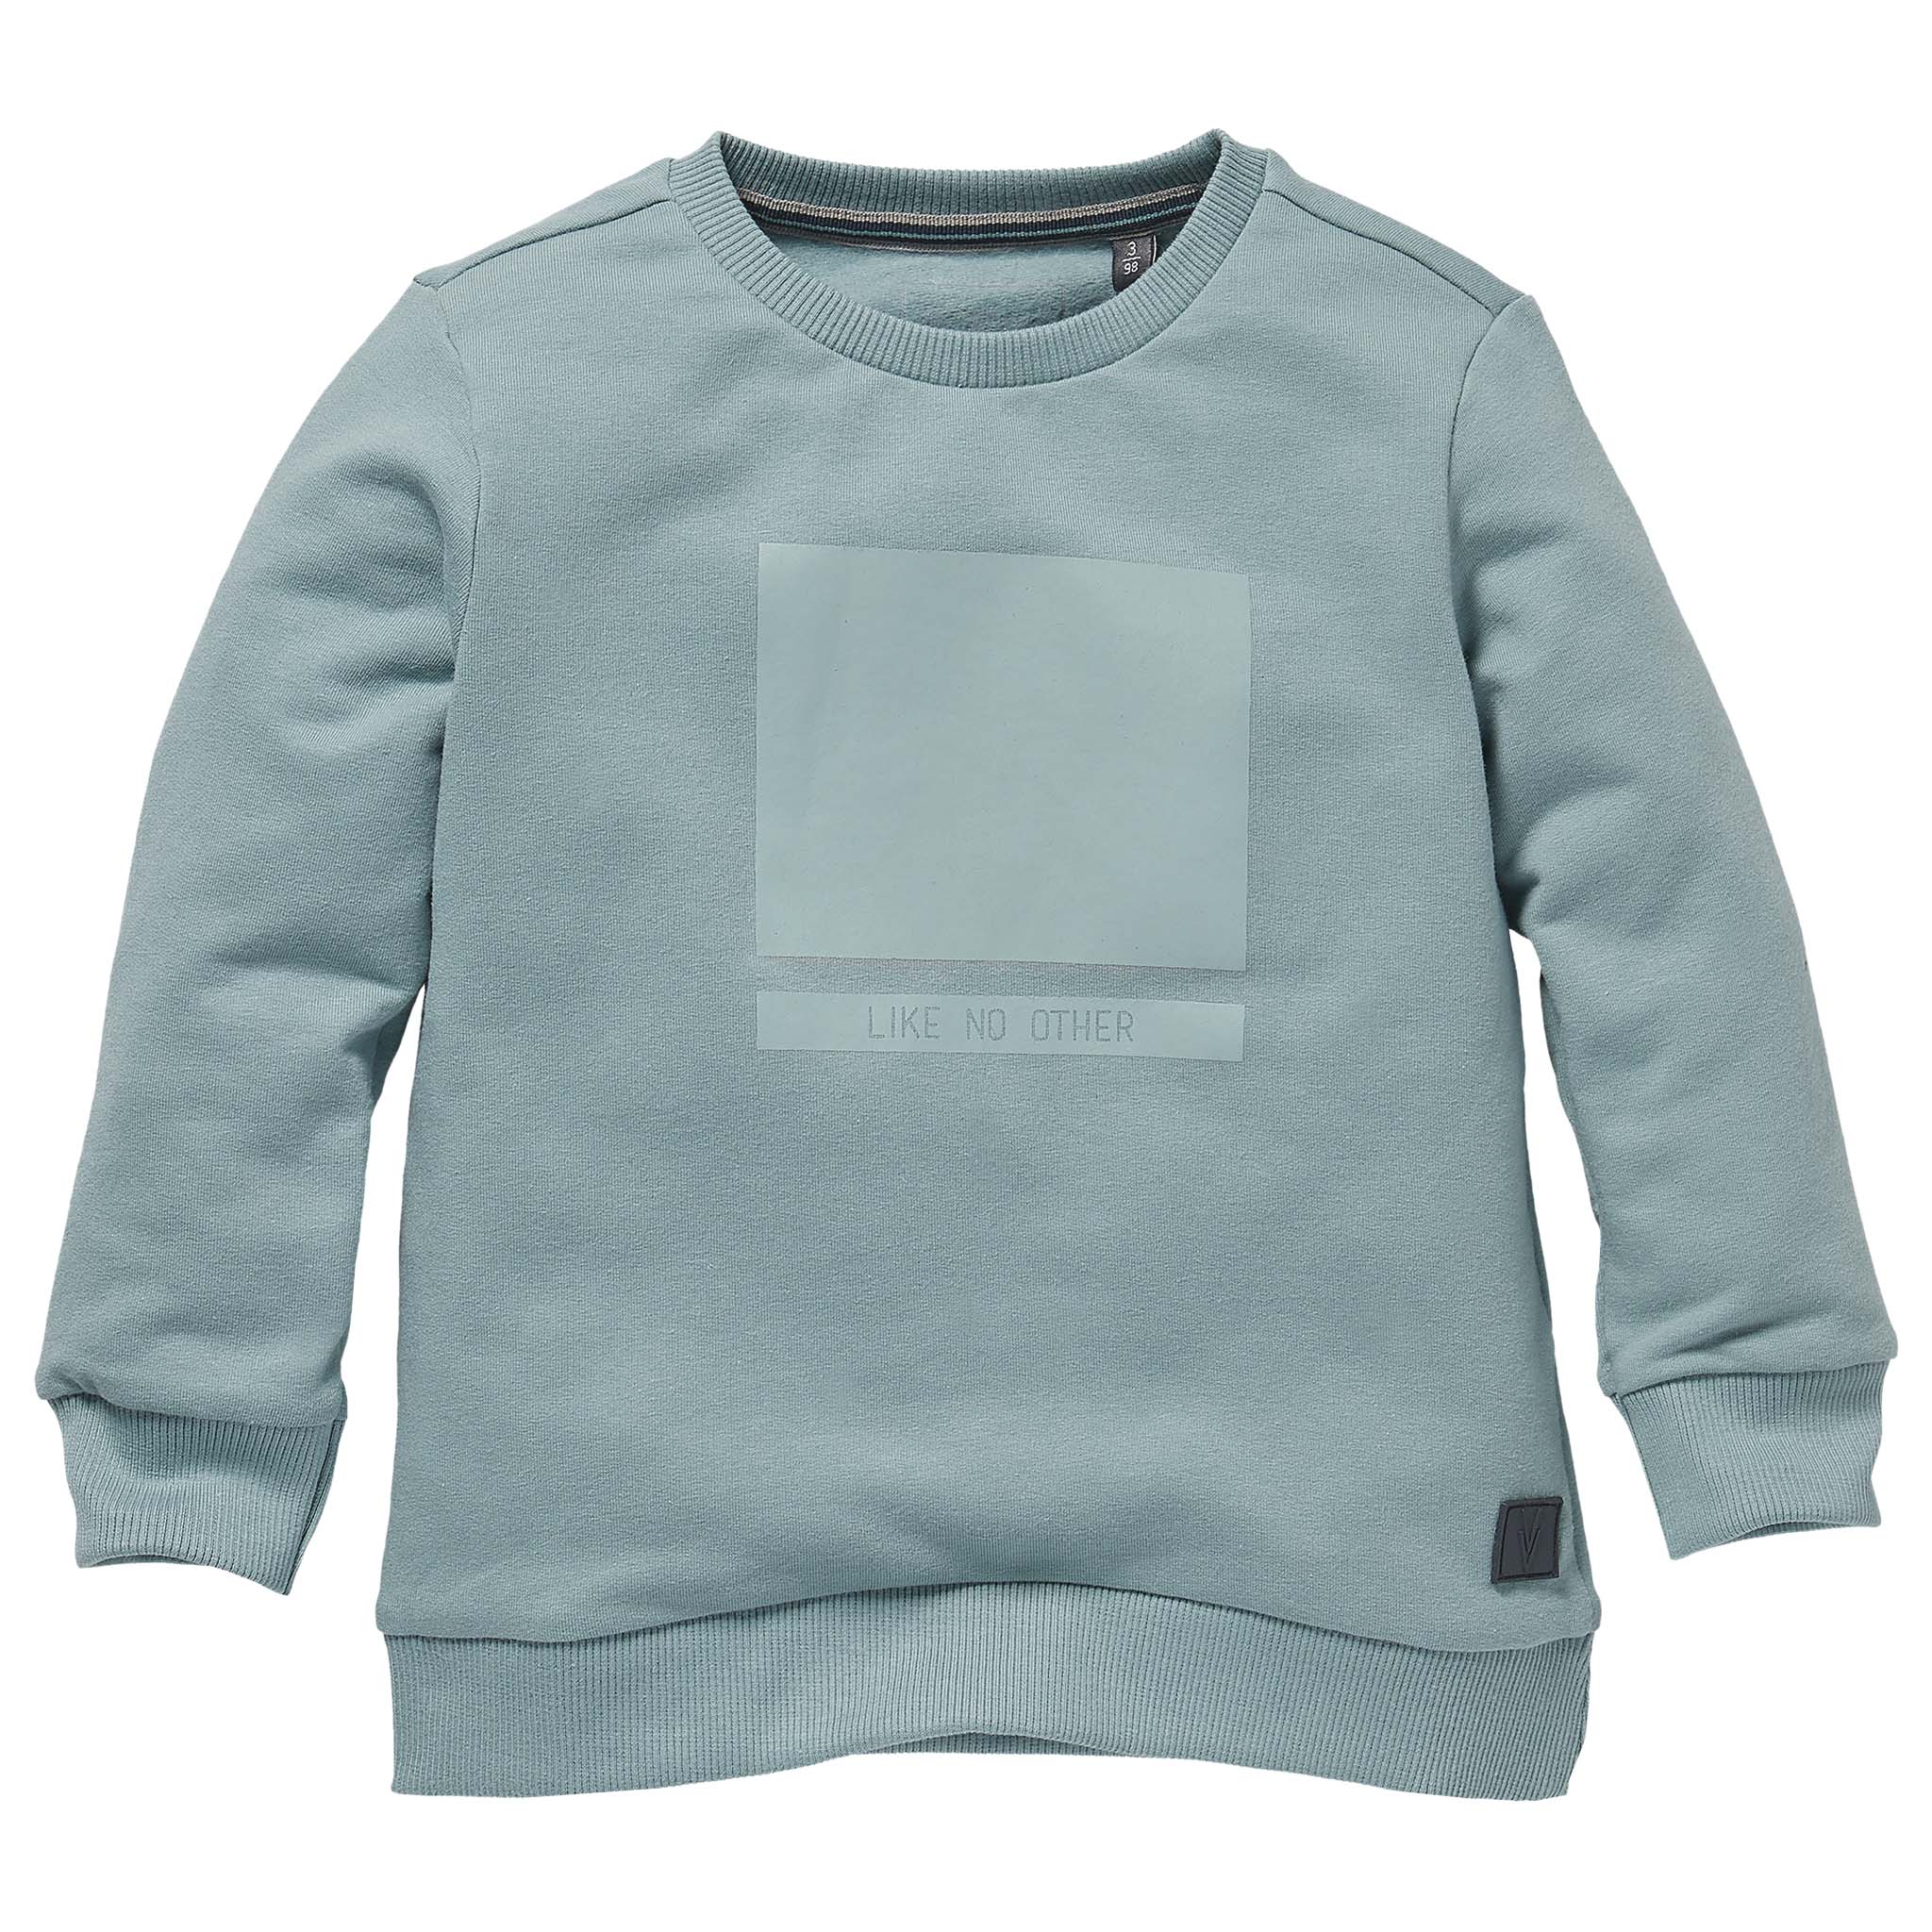 Jongens Sweater SERGIO W211 van Little Levv in de kleur Blue Mist in maat 116.